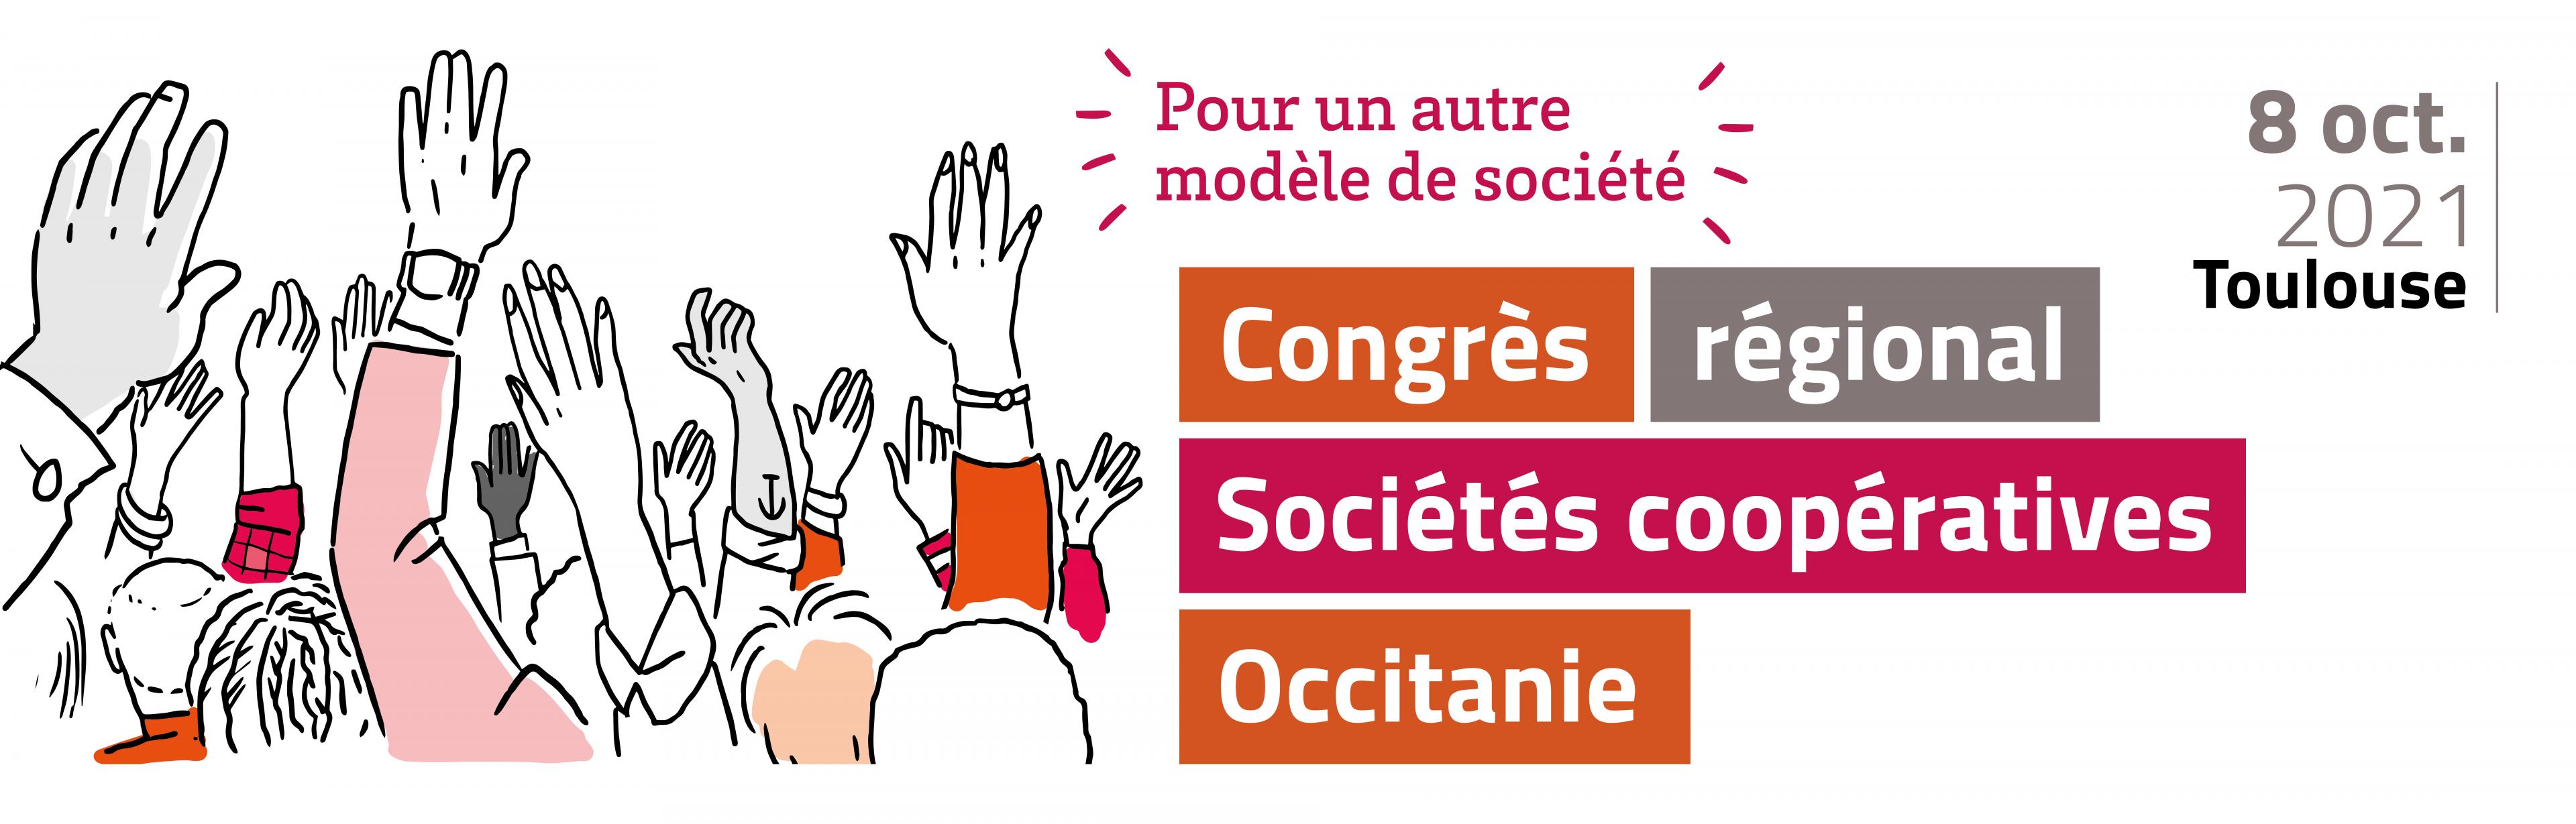 Visuel Congrès régional Occitanie 21